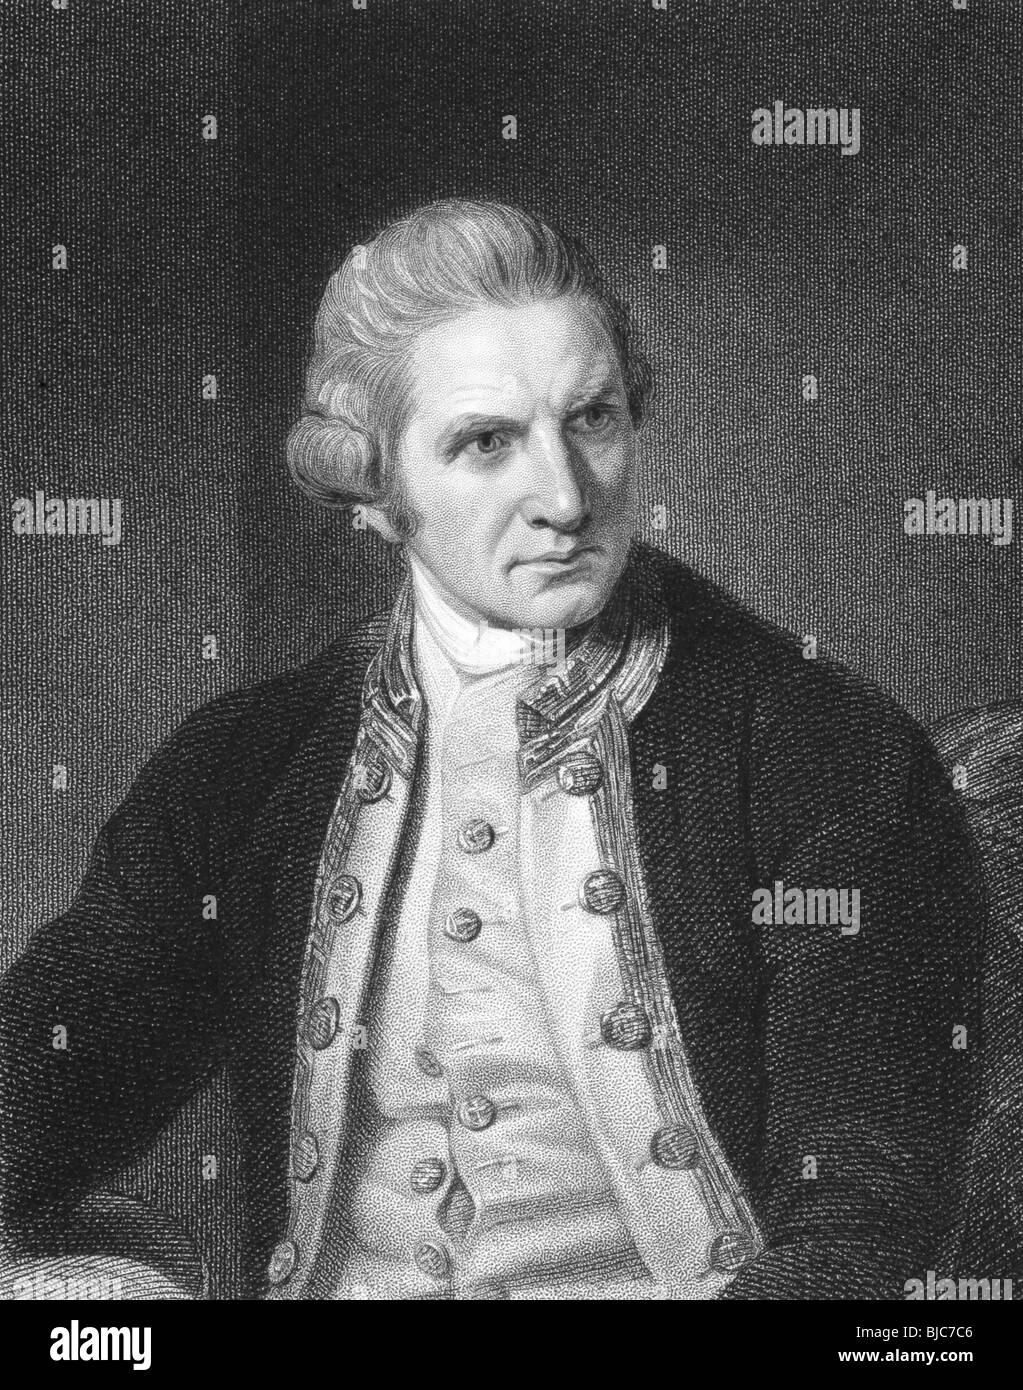 Captain Cook (1728-1779) auf Gravur aus den 1800er Jahren. Englisch Explorer, Navigator und Kartograph. Stockfoto